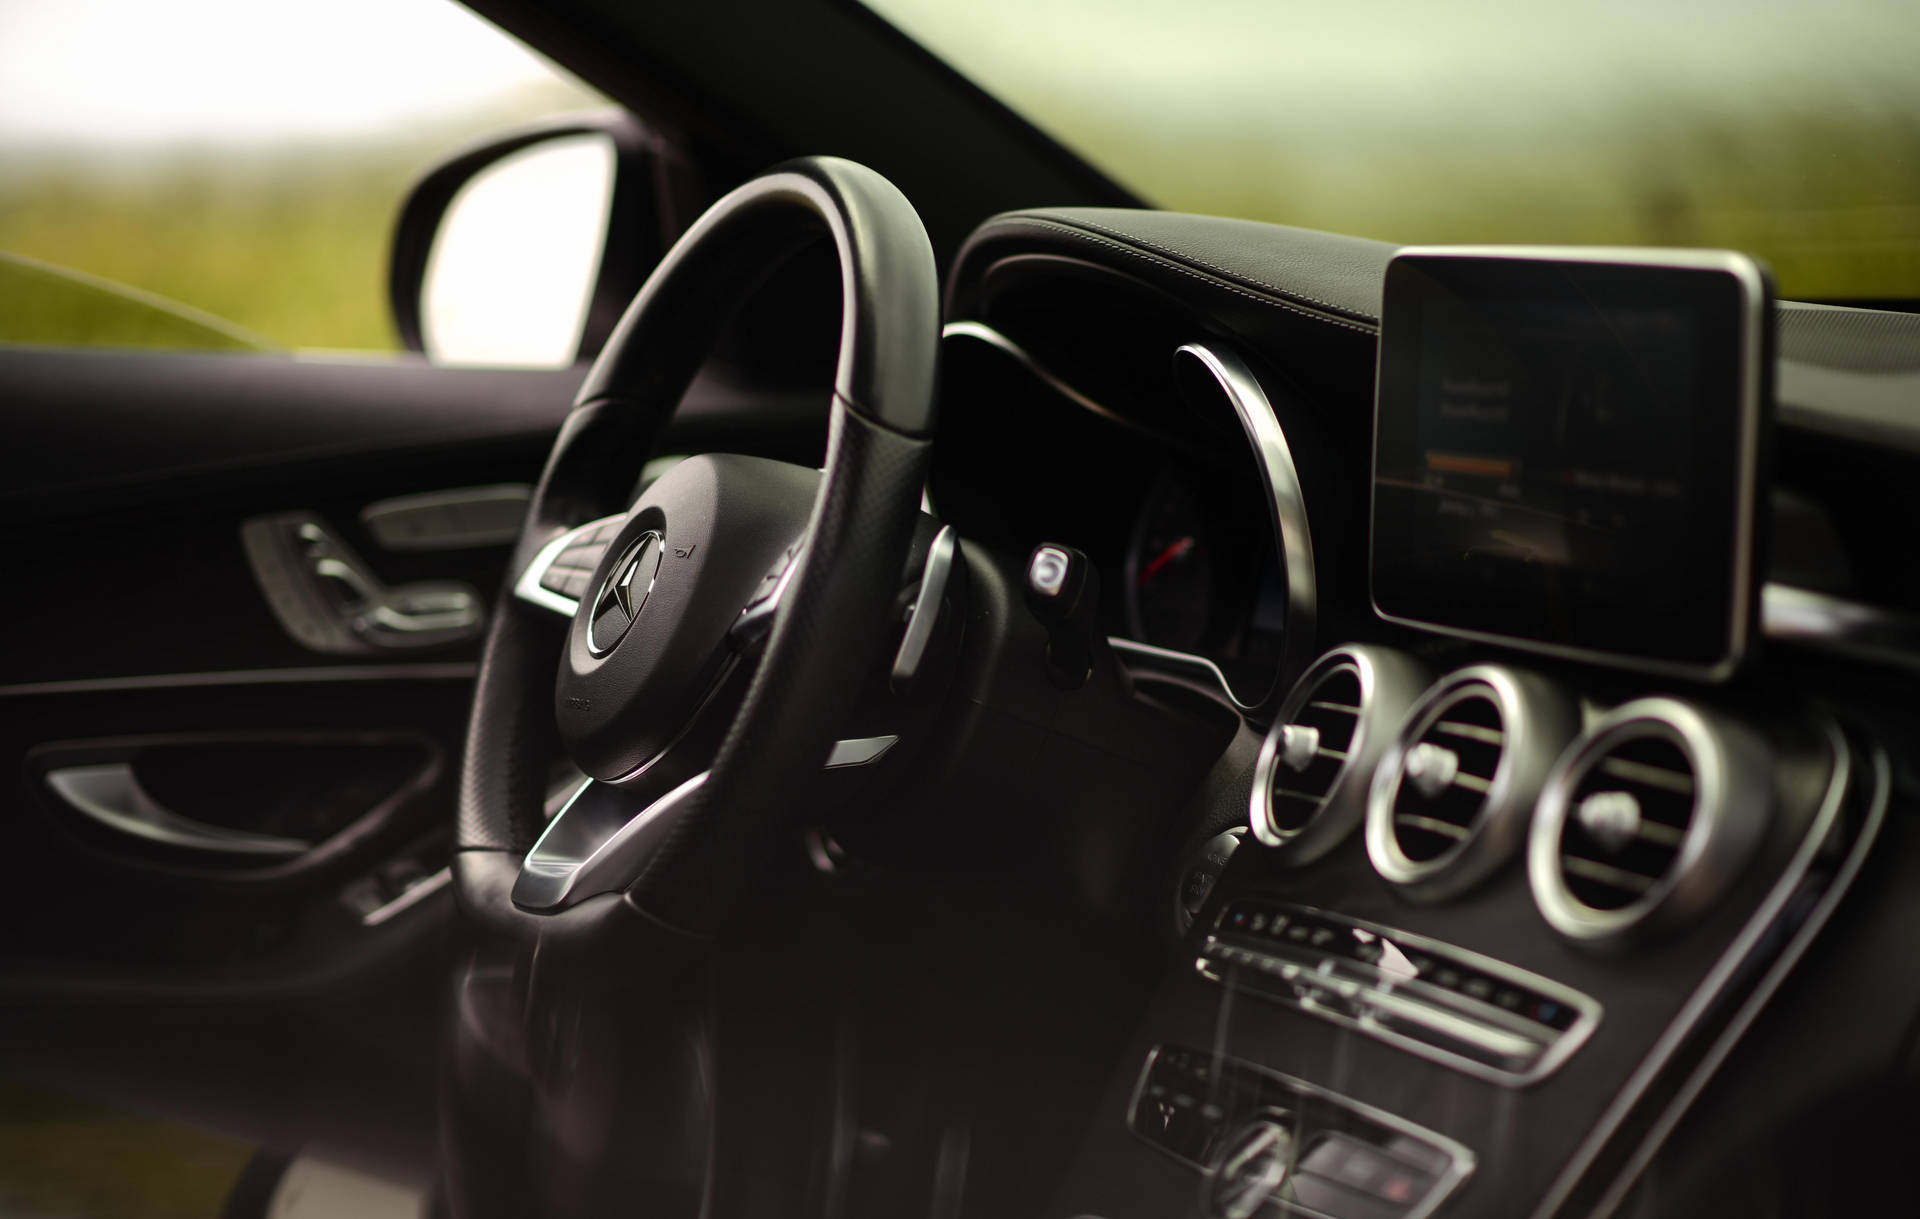 Mercedes Benz C300 Interior Background